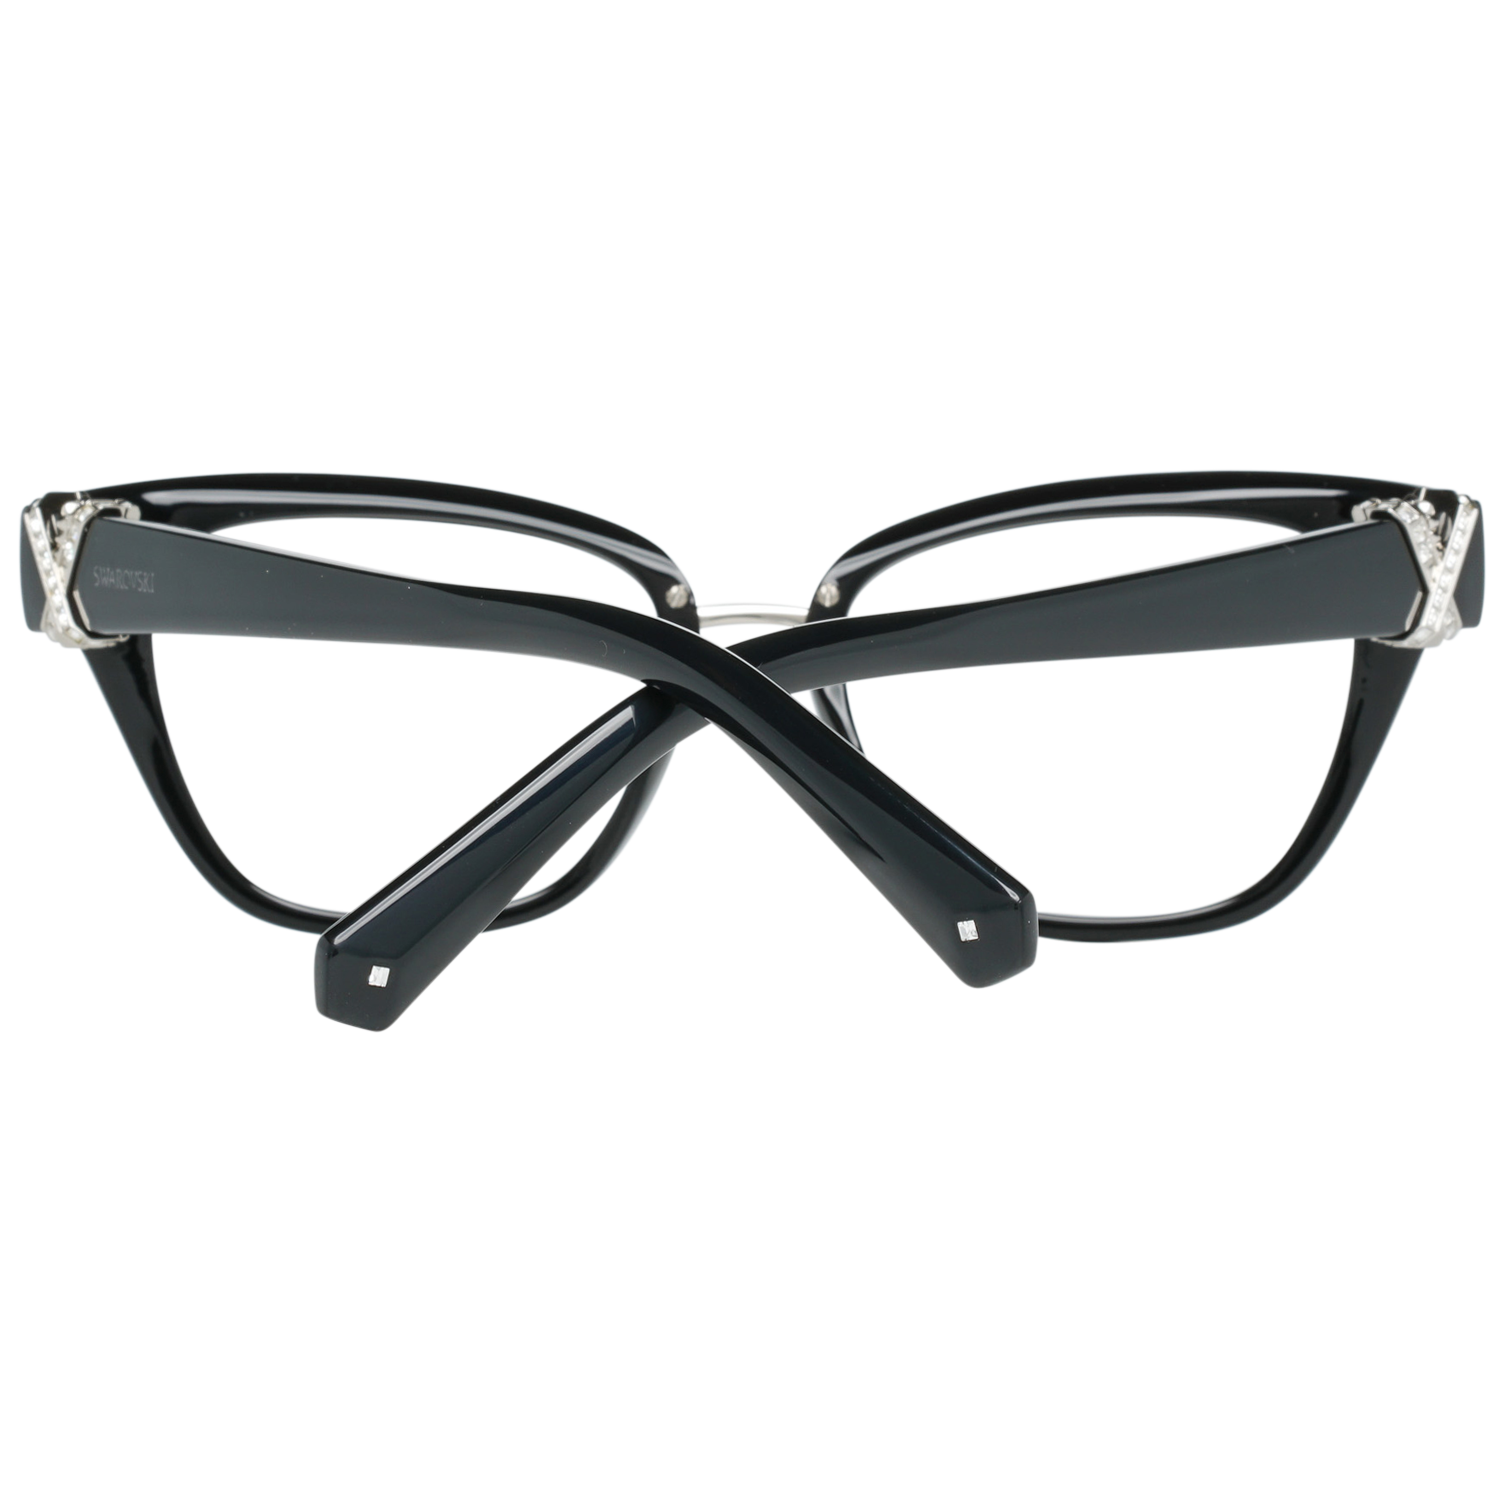 Swarovski Frames Swarovski Women Glasses Optical Frame SK5251 001 50 Eyeglasses Eyewear UK USA Australia 